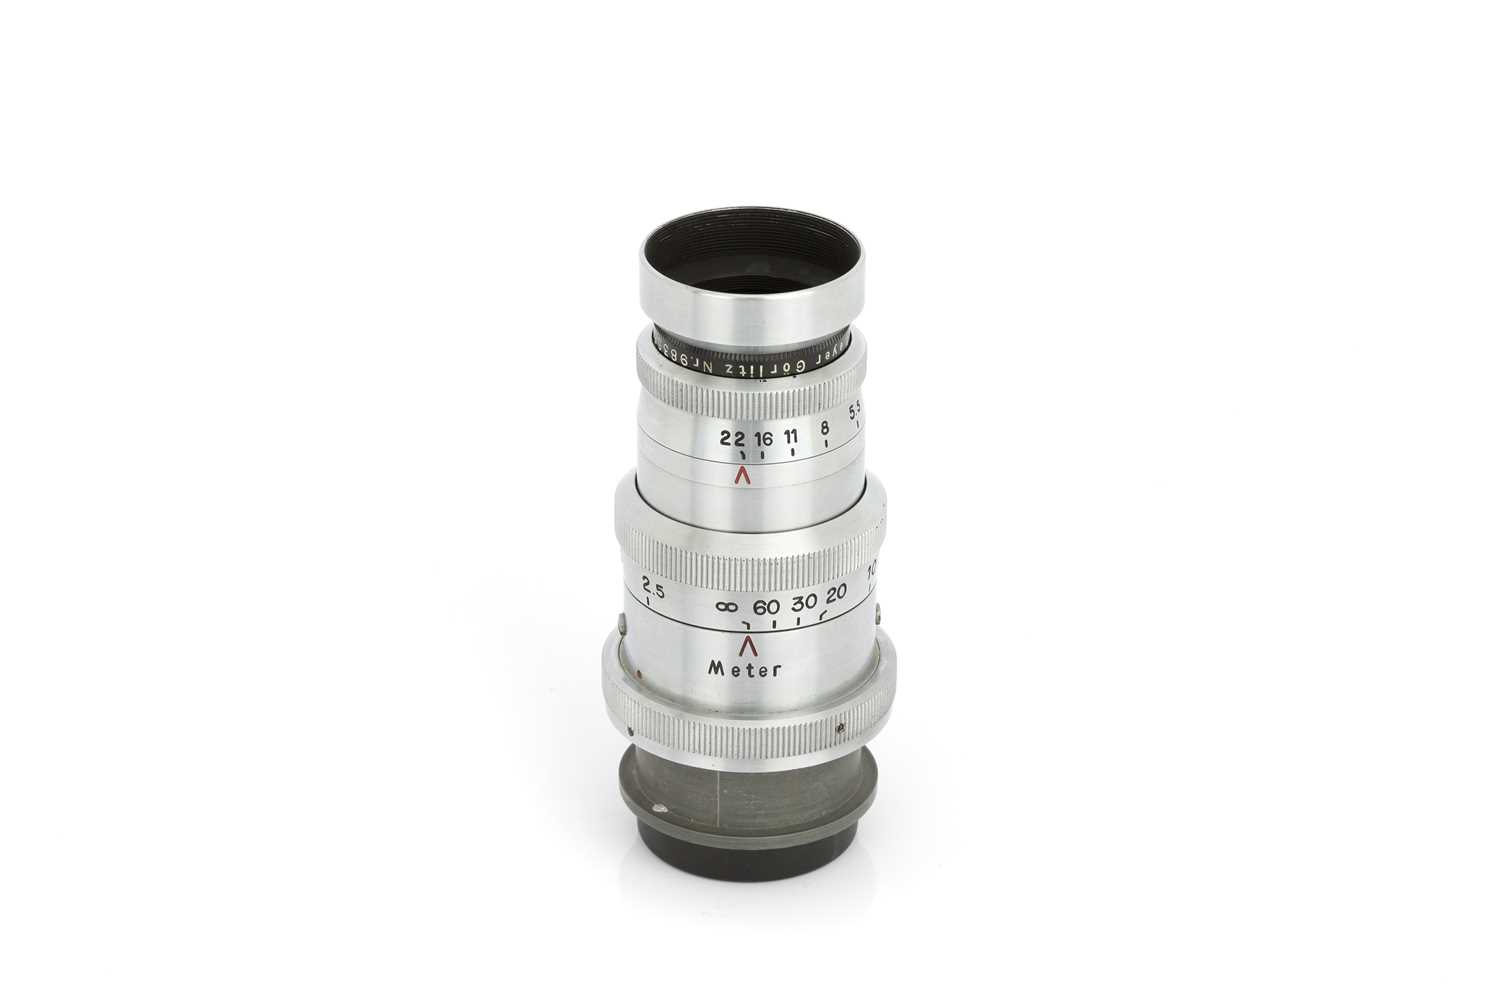 Lot 147 - A Meyer Gorlitz Telee Megor f/5.5 150mm Lens